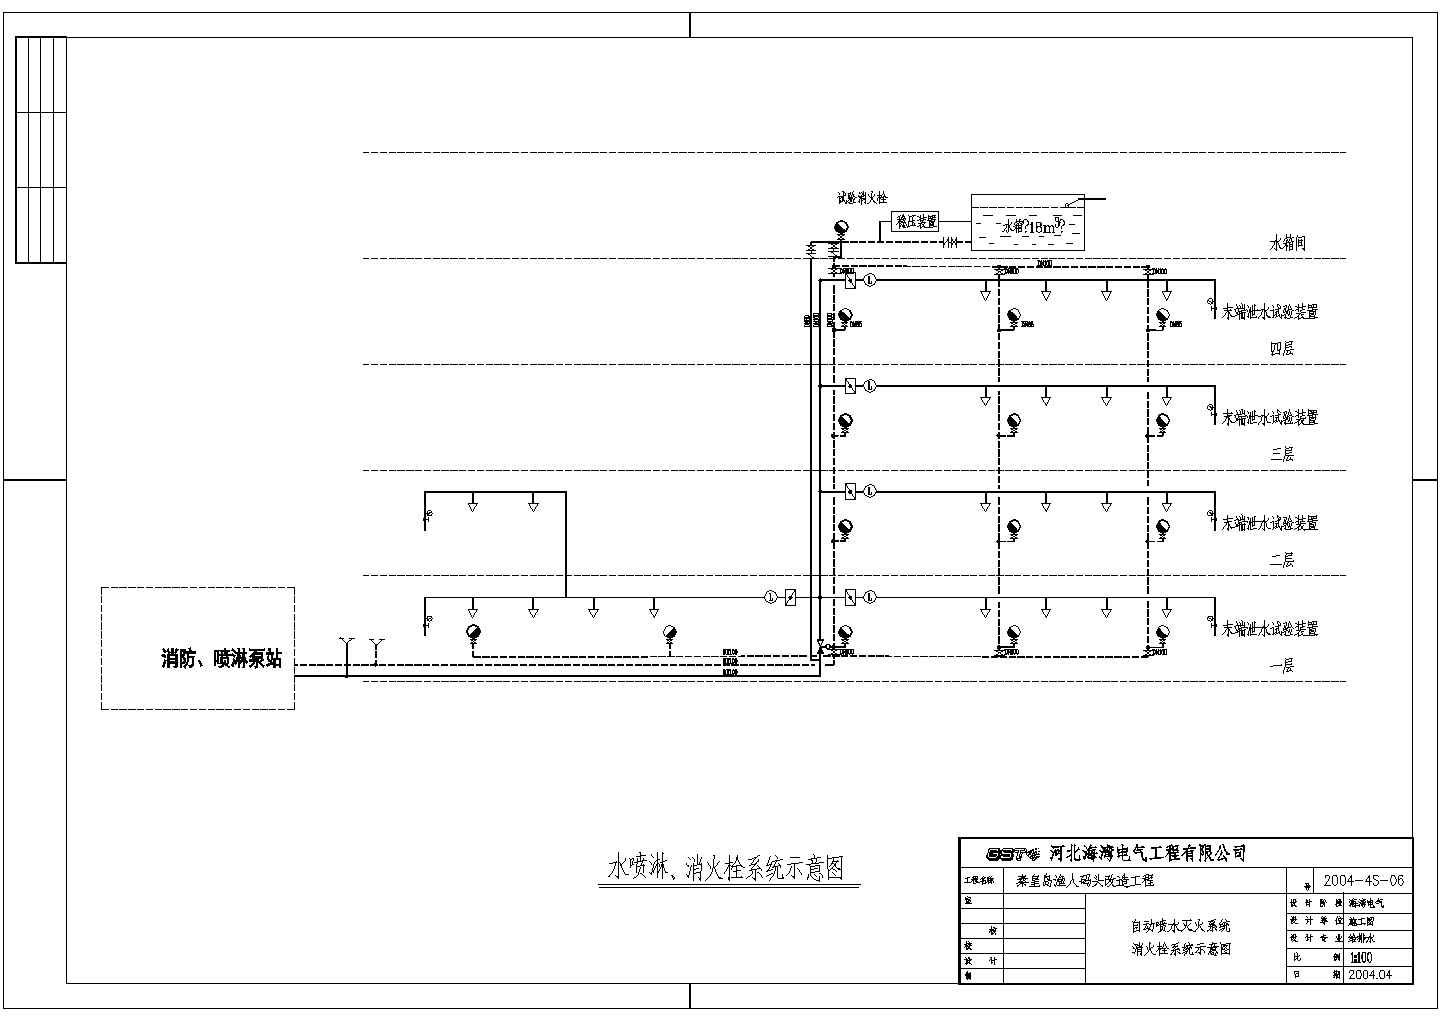 深圳市海湾某五星级酒店内火灾系统配置设计cad图